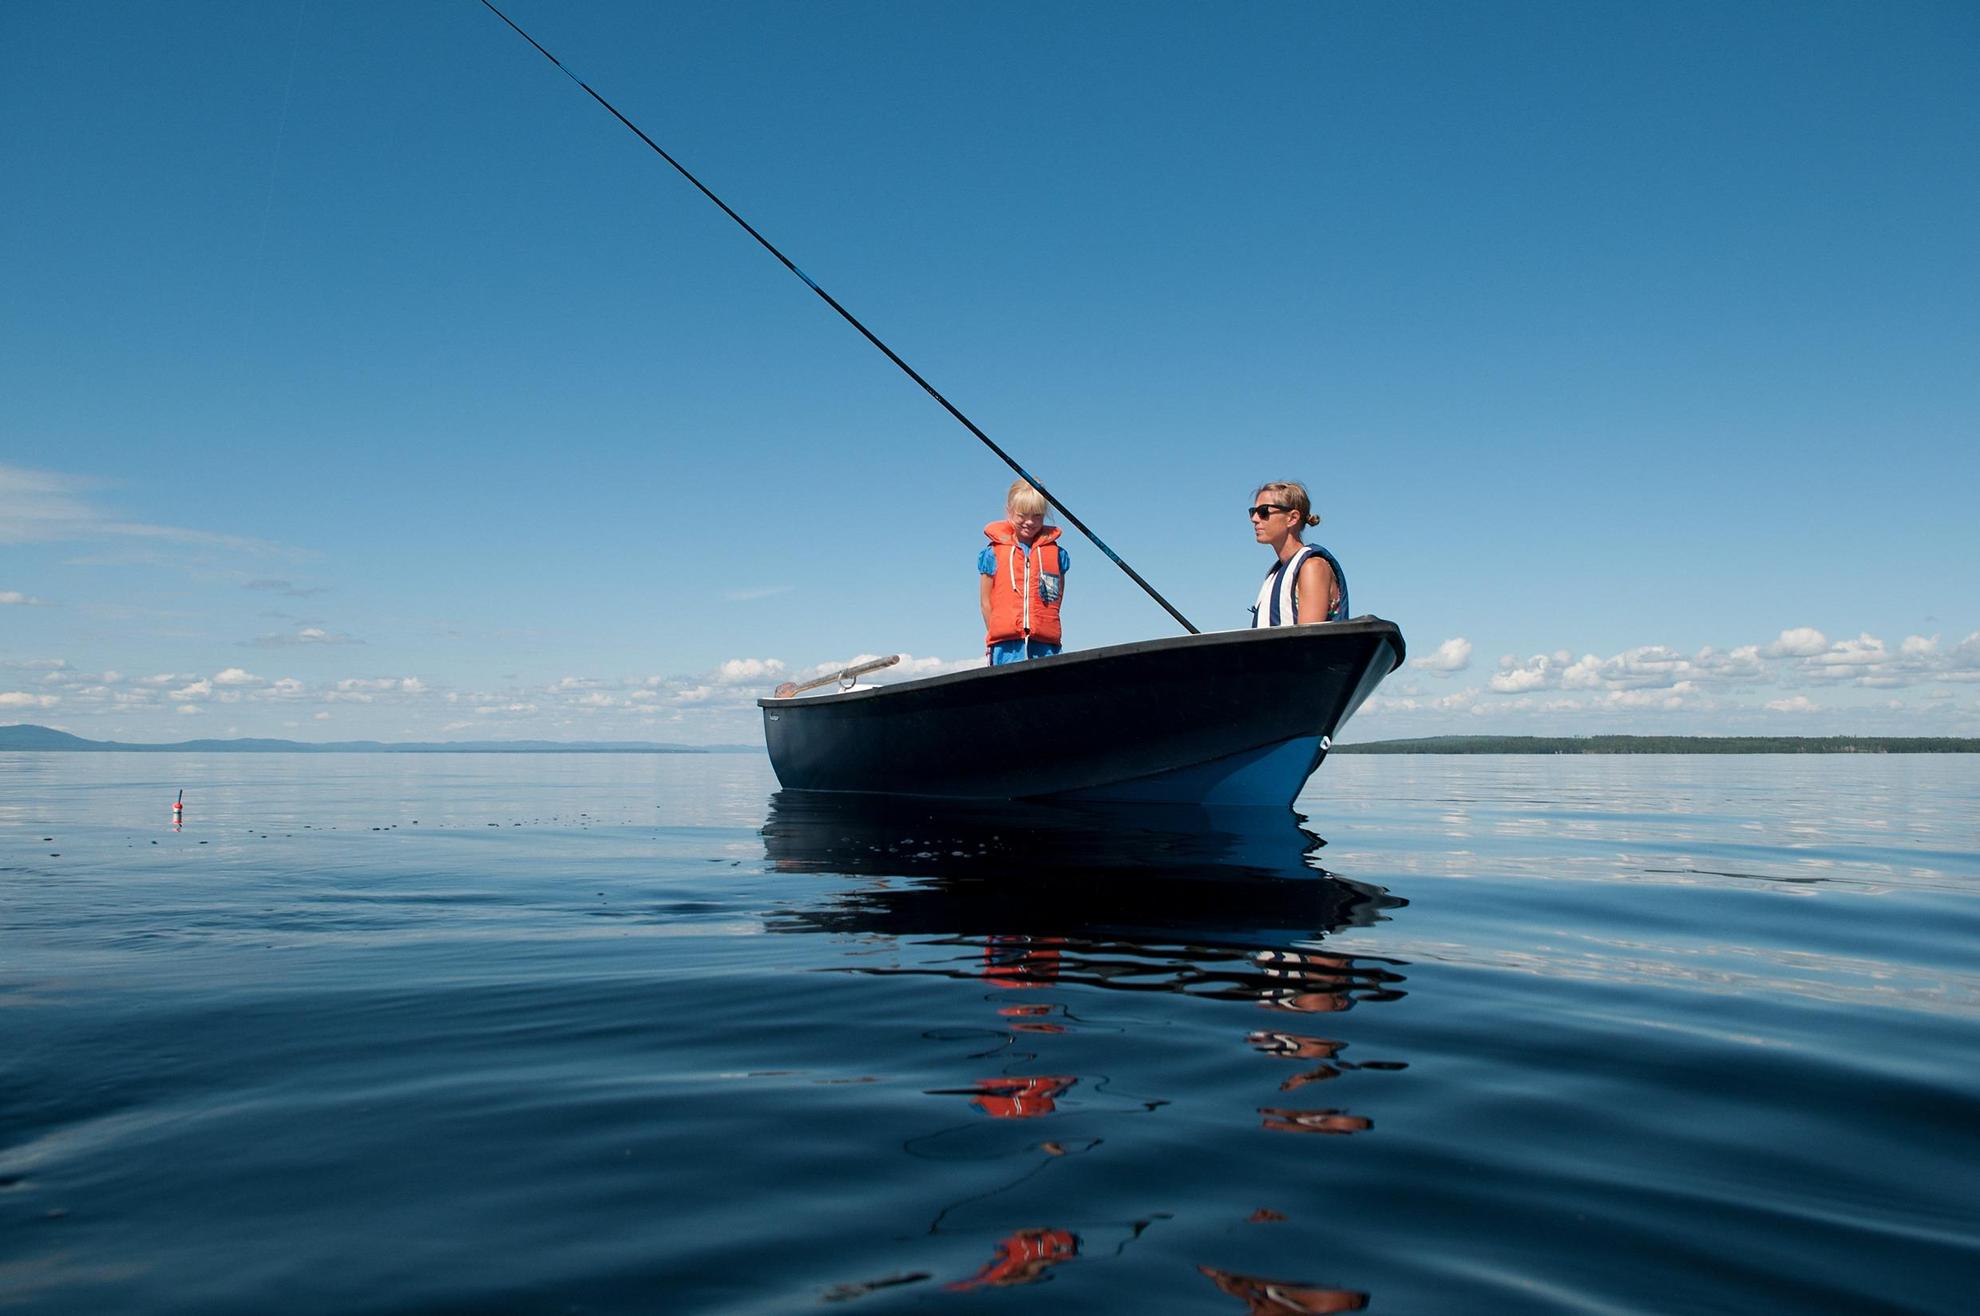 Vue sur deux personnes dans une barque en train de pêcher sur un lac.